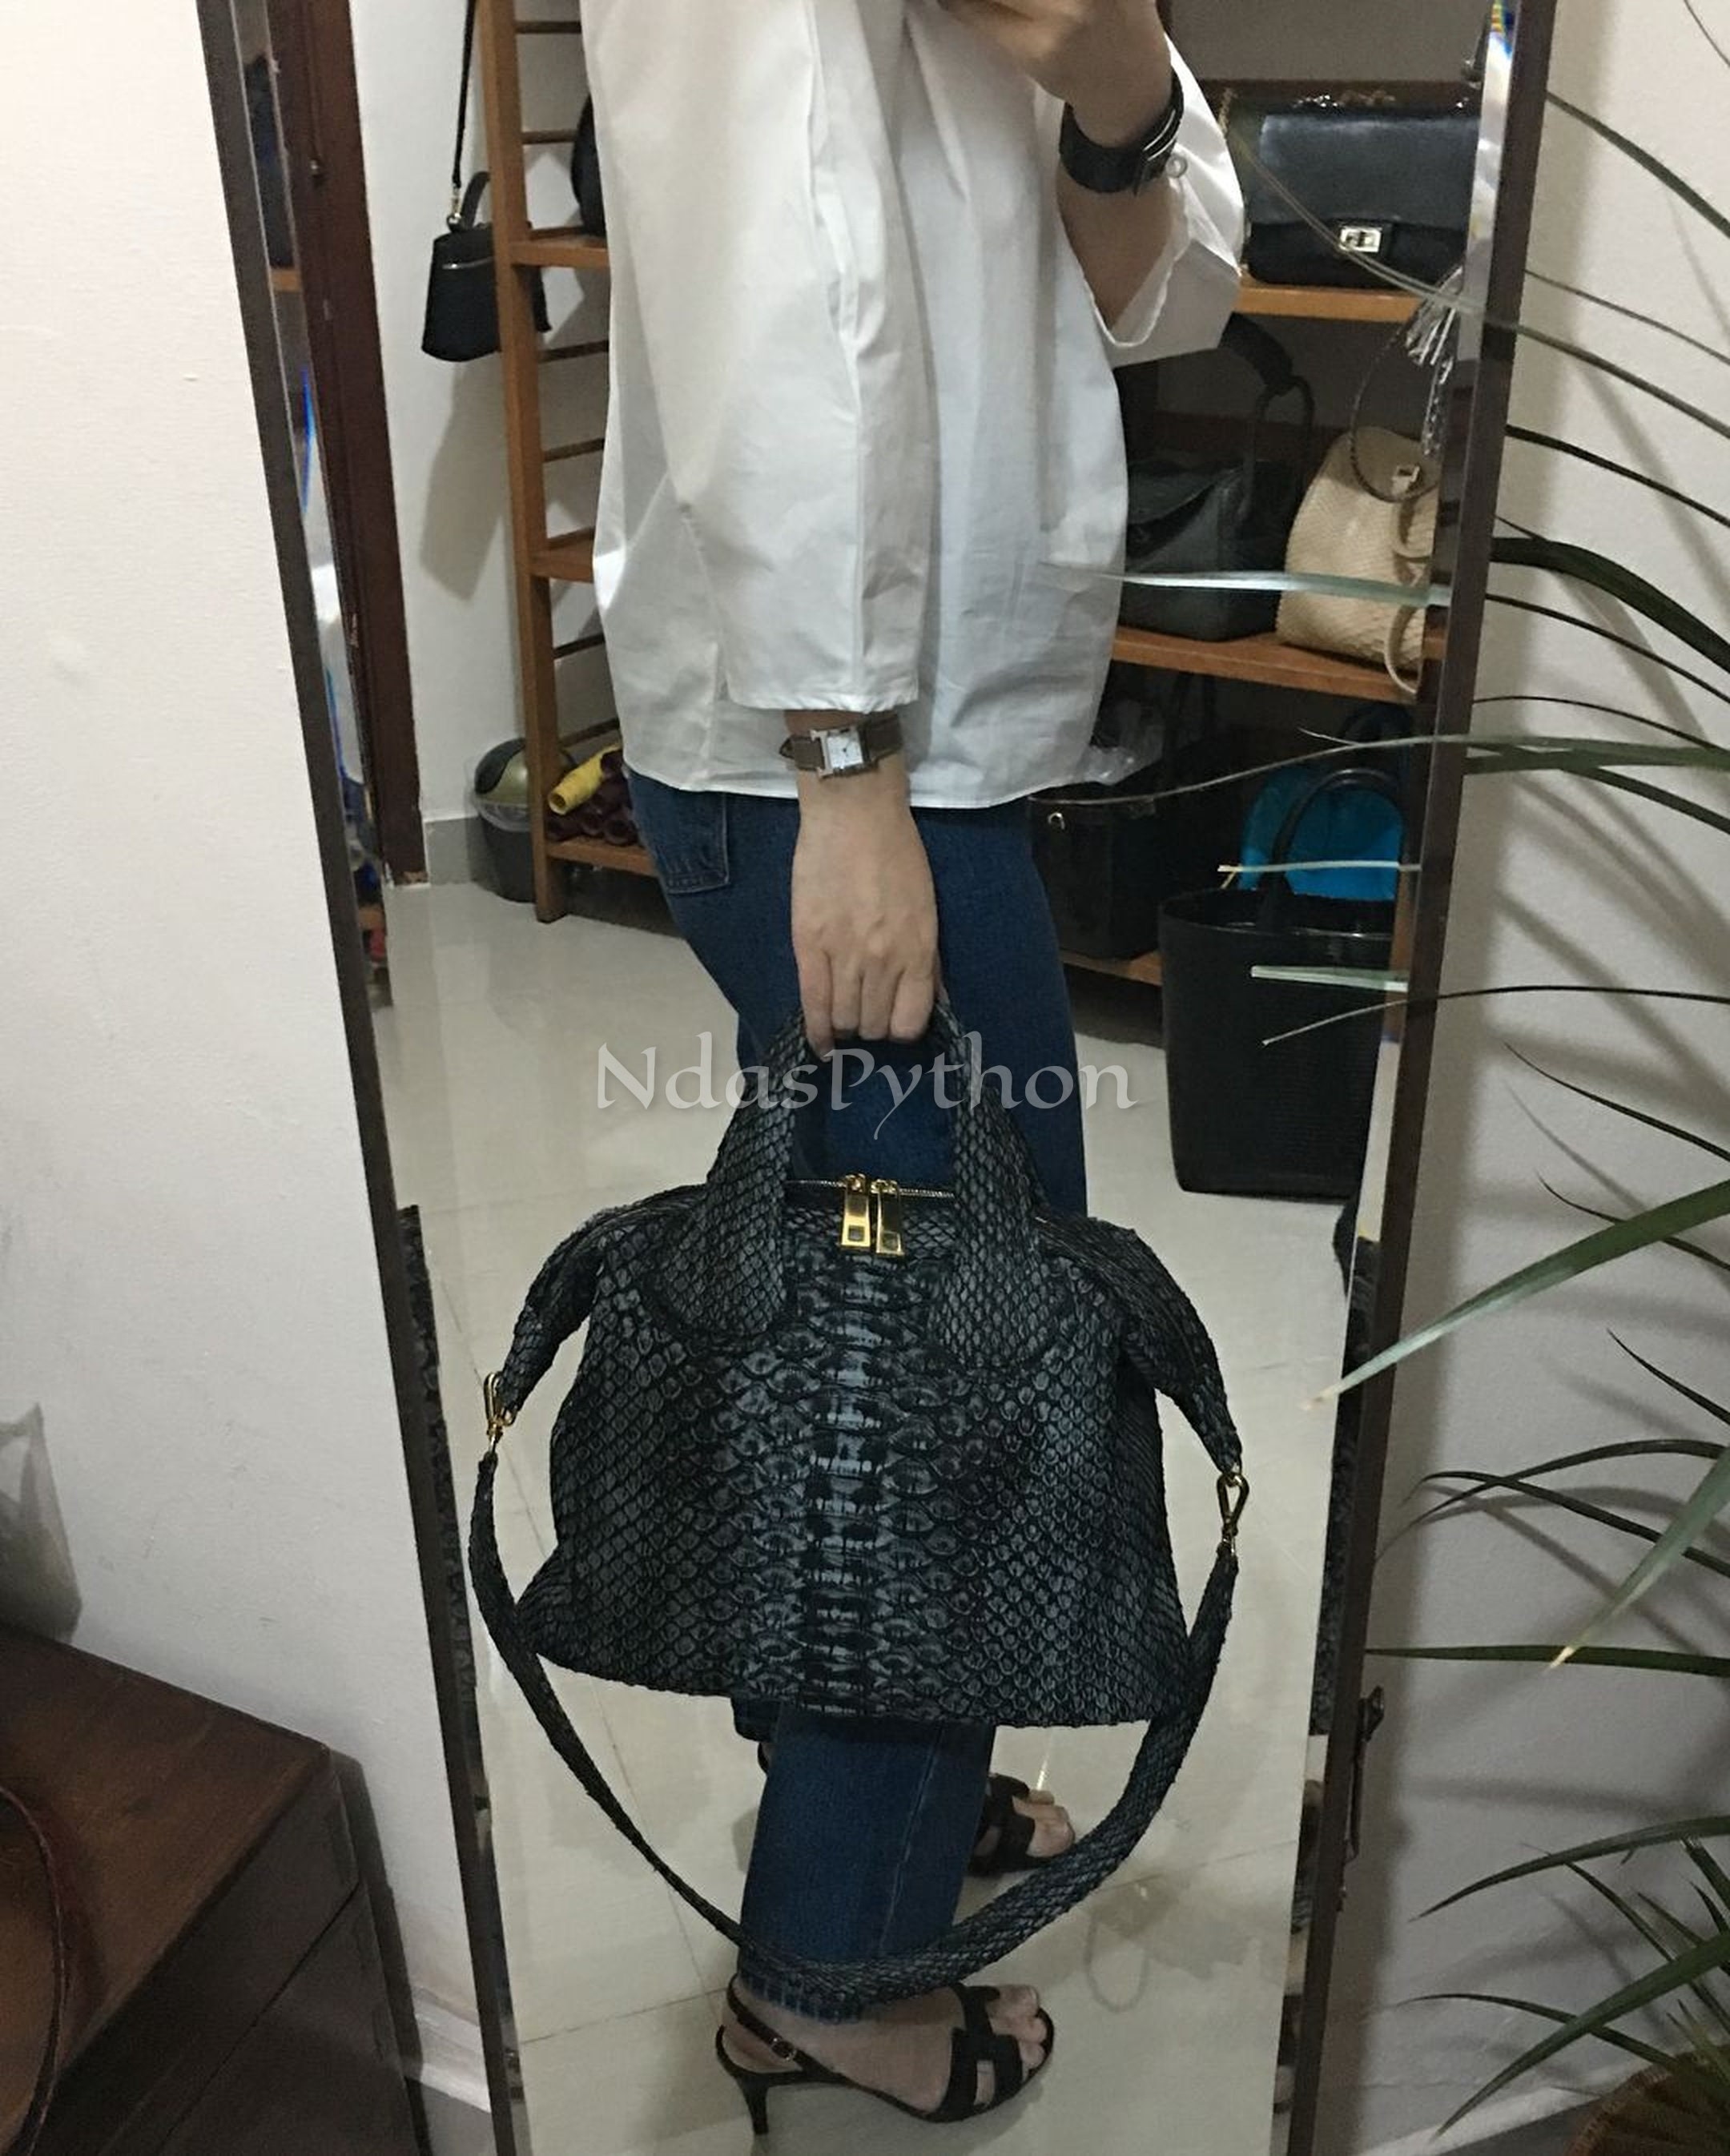 Snakeskin Top Handle Bag – Luxury Noire